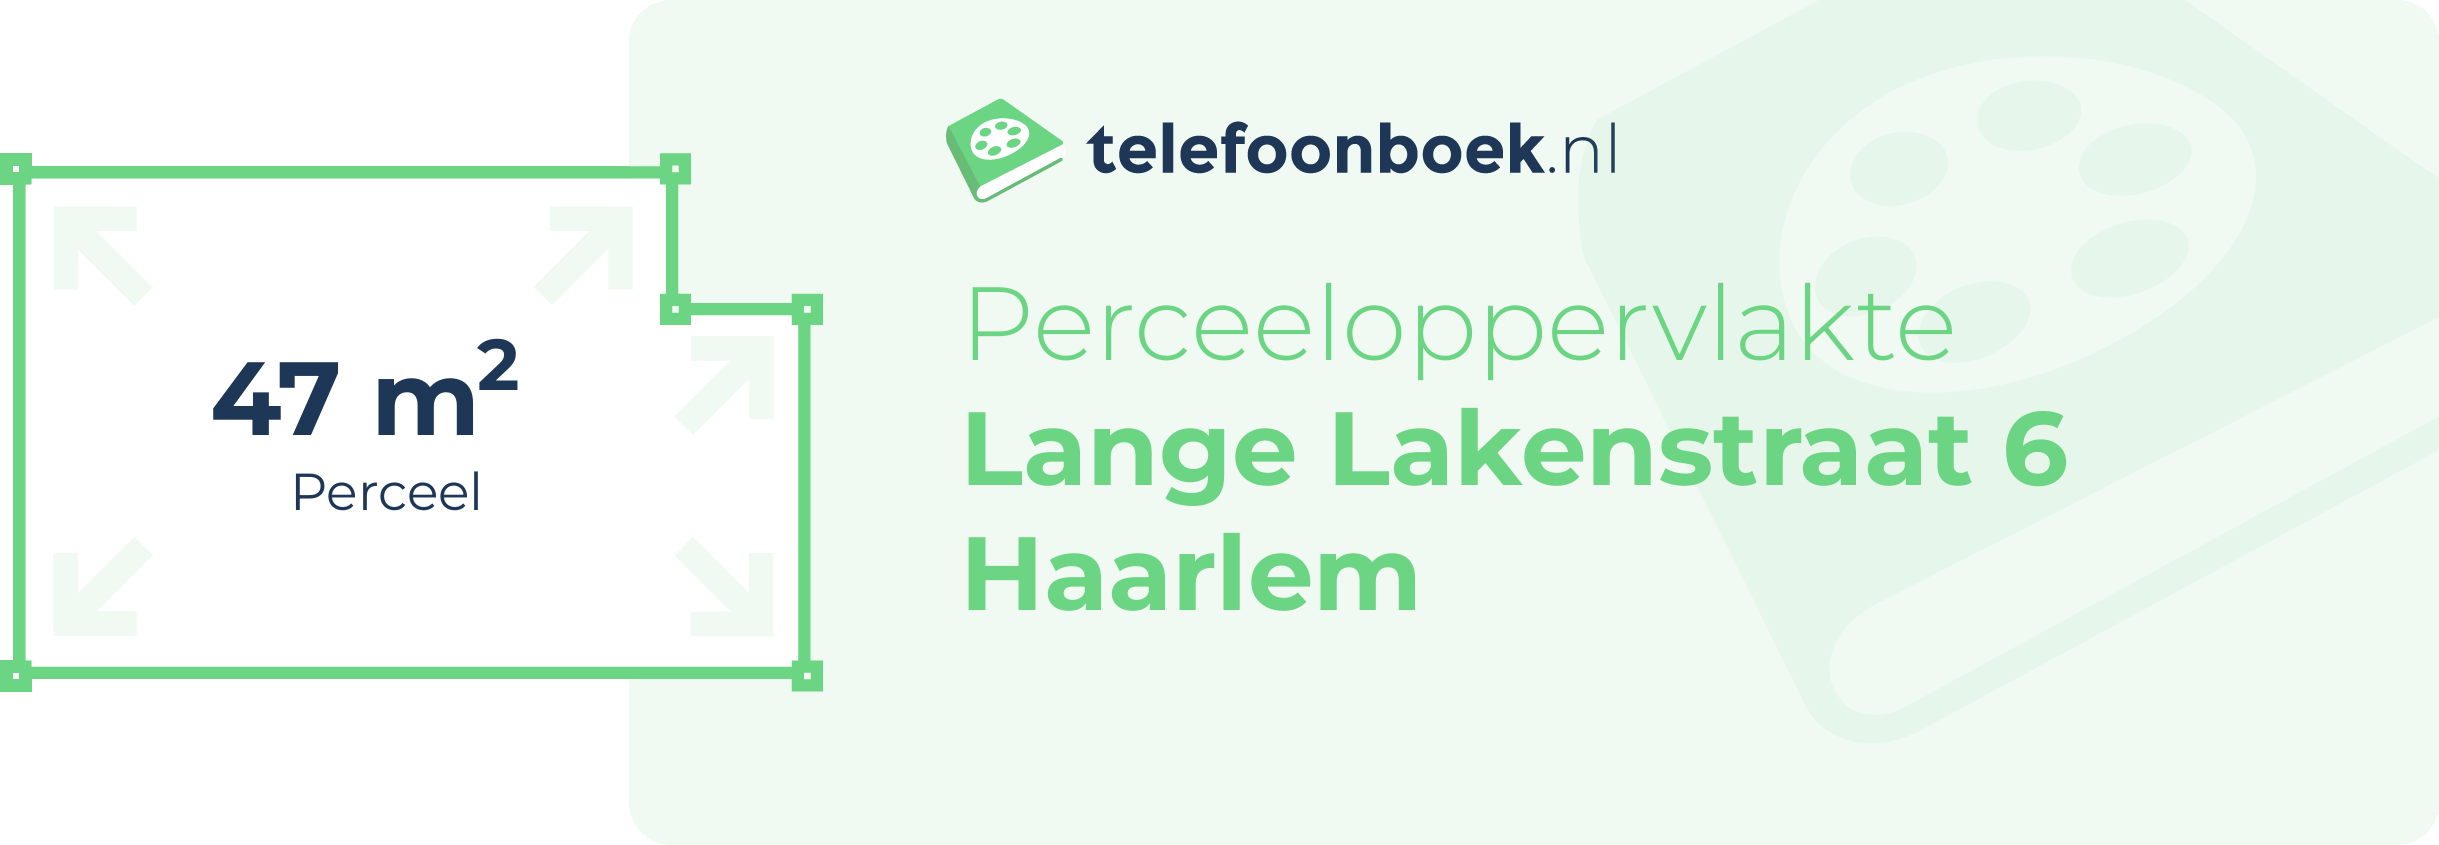 Perceeloppervlakte Lange Lakenstraat 6 Haarlem